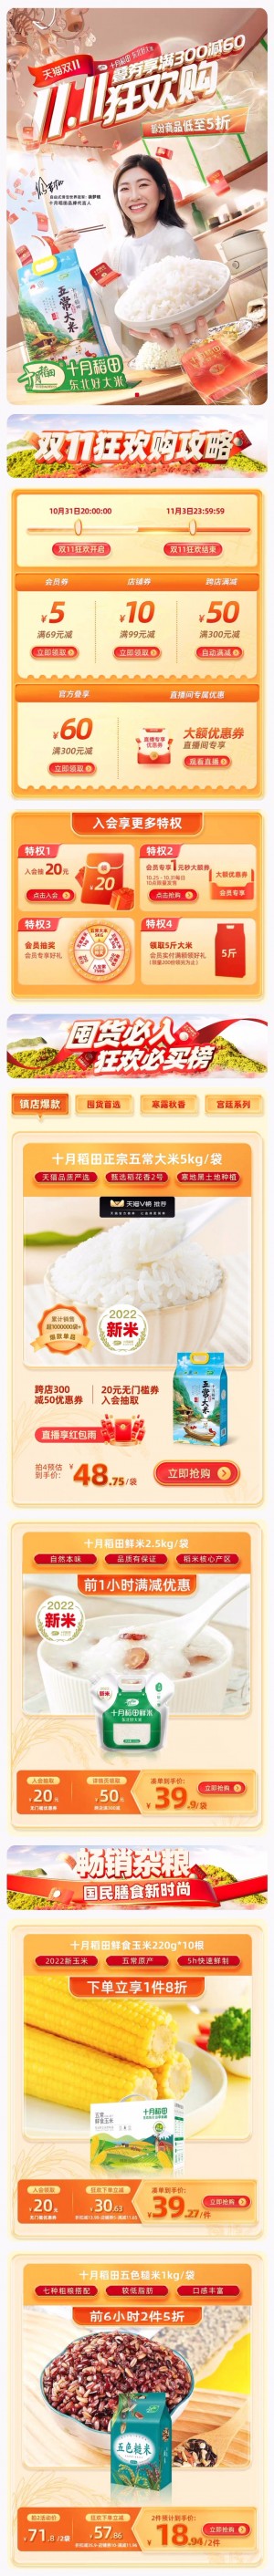 天猫首页十月稻田 食品 粮油 双11预售 双十一来啦 手机端 M端活动首页设计